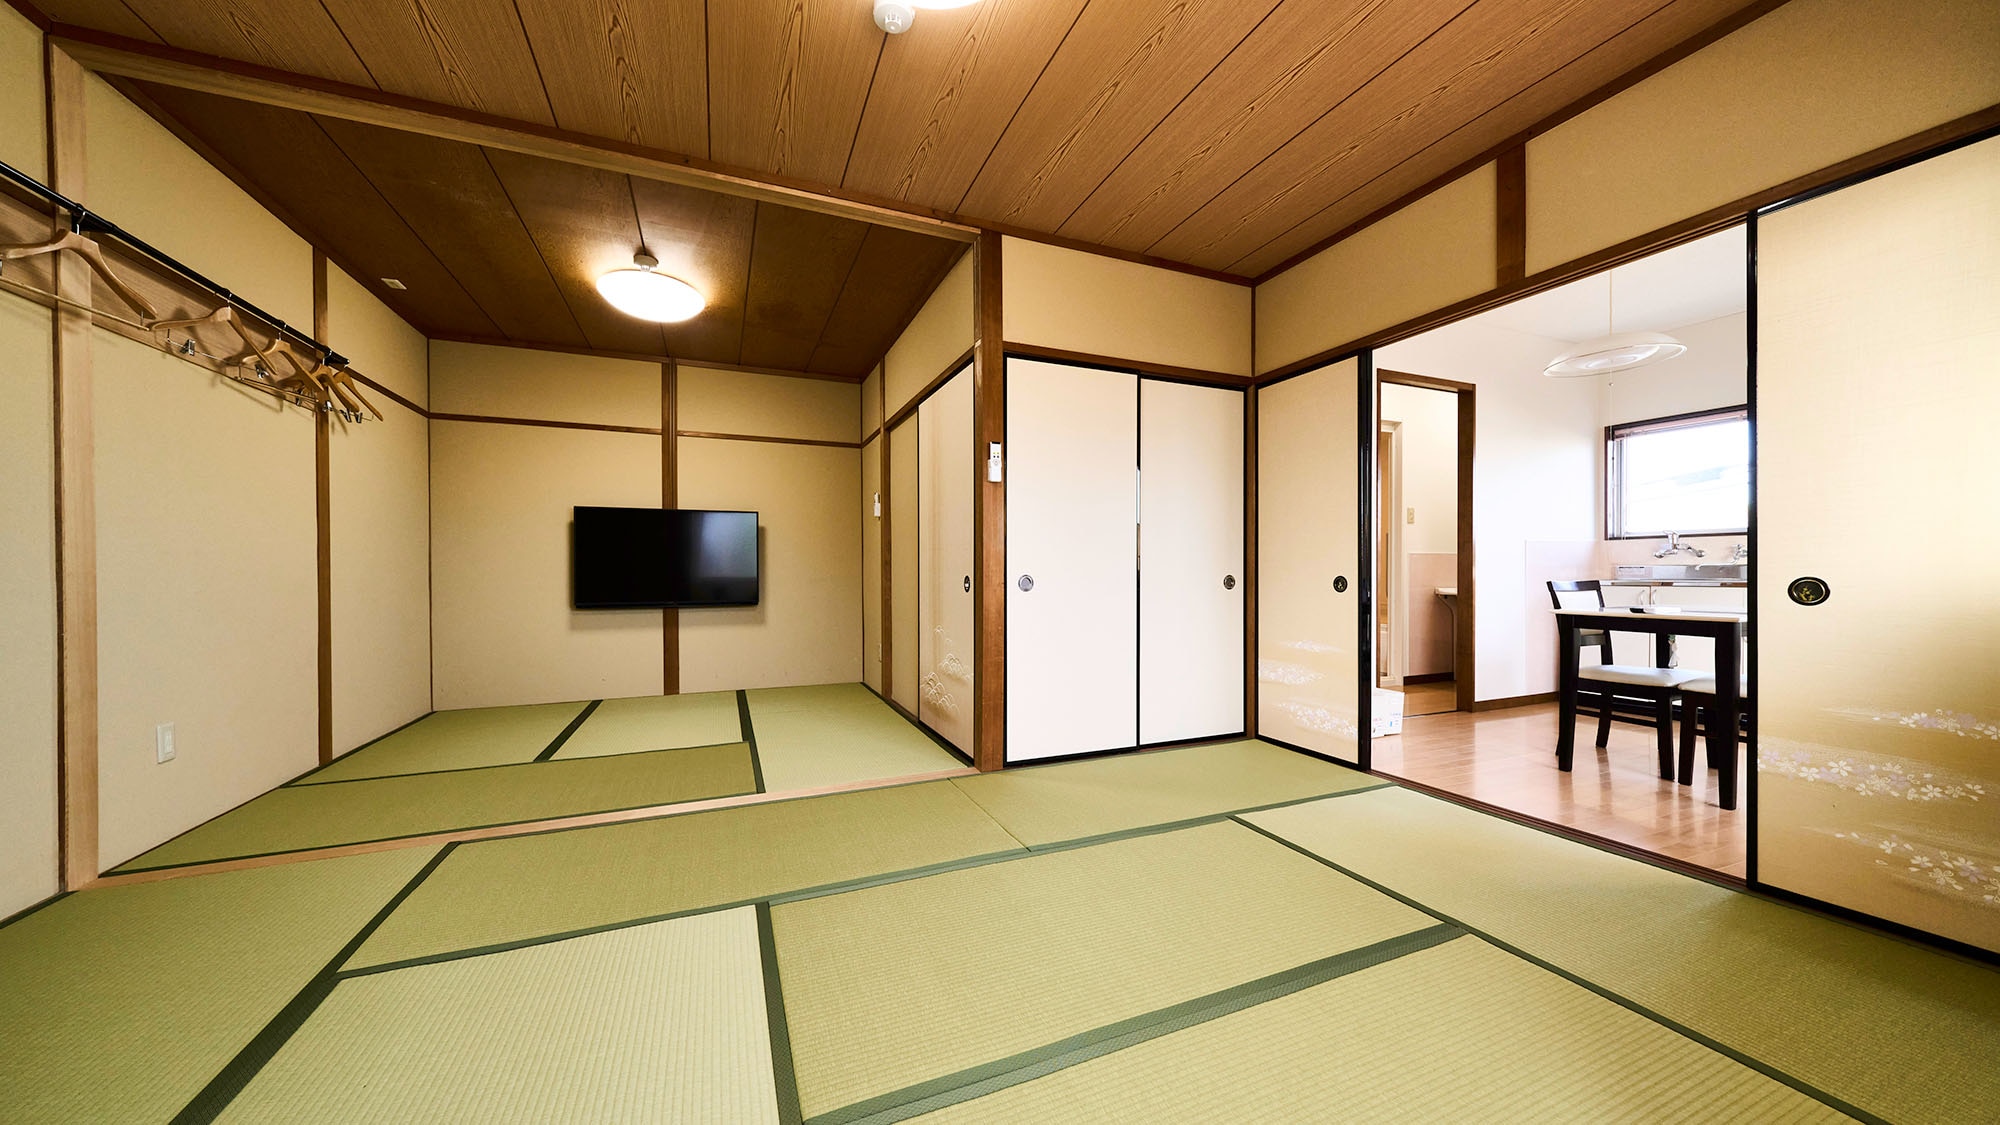 ・【일본식 S】최대 7명까지 숙박하실 수 있는 방입니다. 그룹 여행에서의 이용 등에 부디